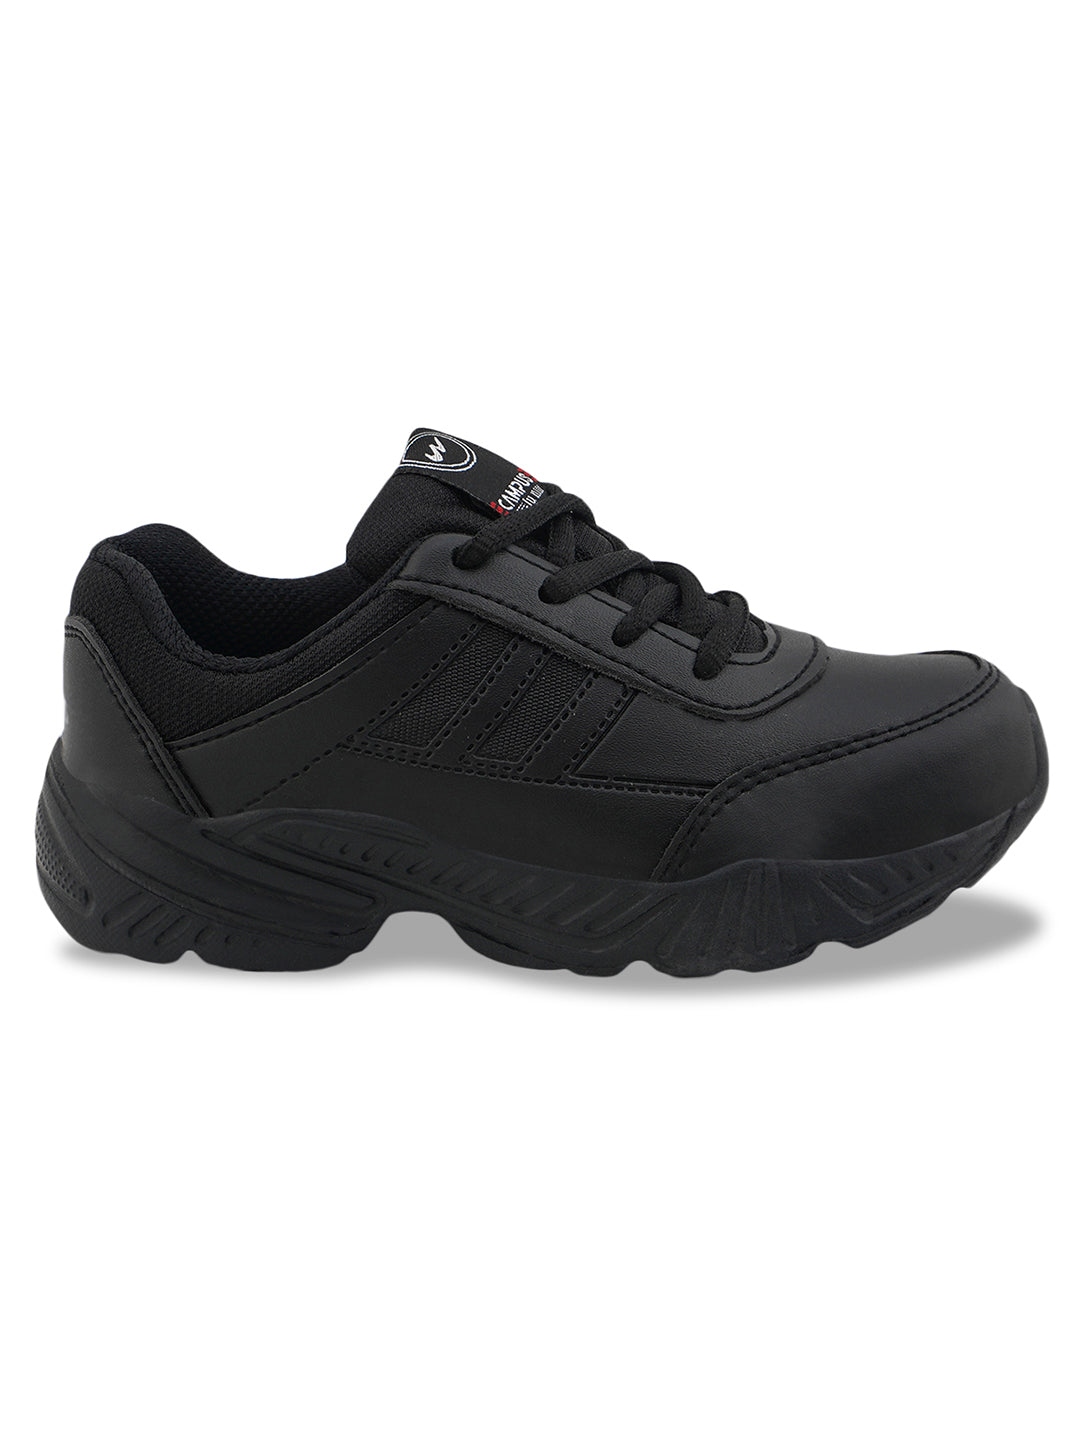 BINGO-151R Black Kid's School Shoes – Campus Shoes